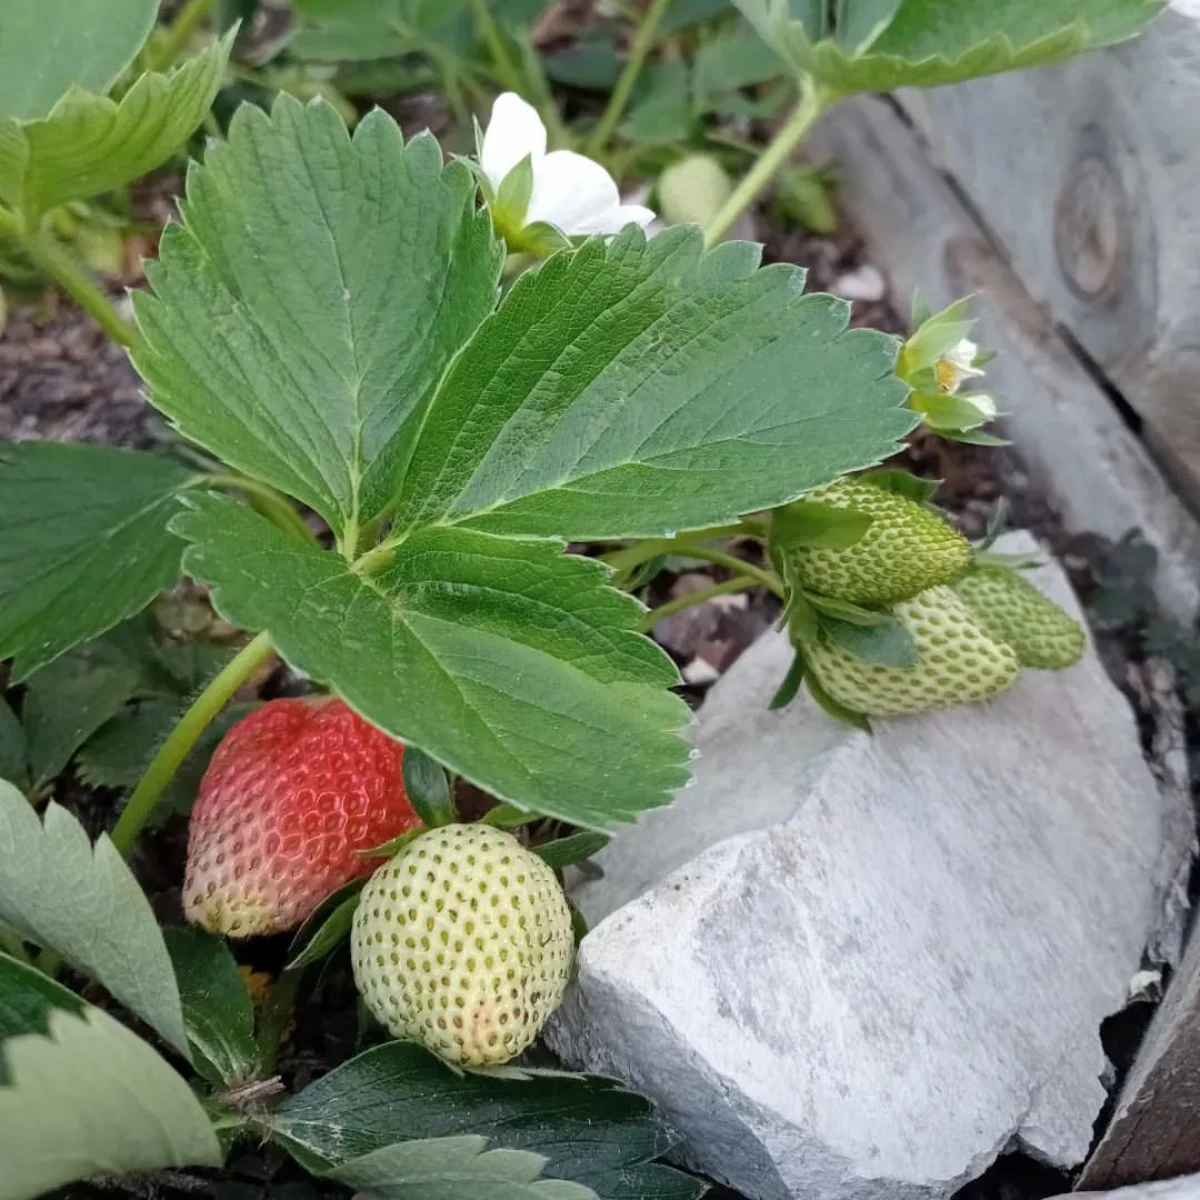 des fraisiers a cote d une pierre